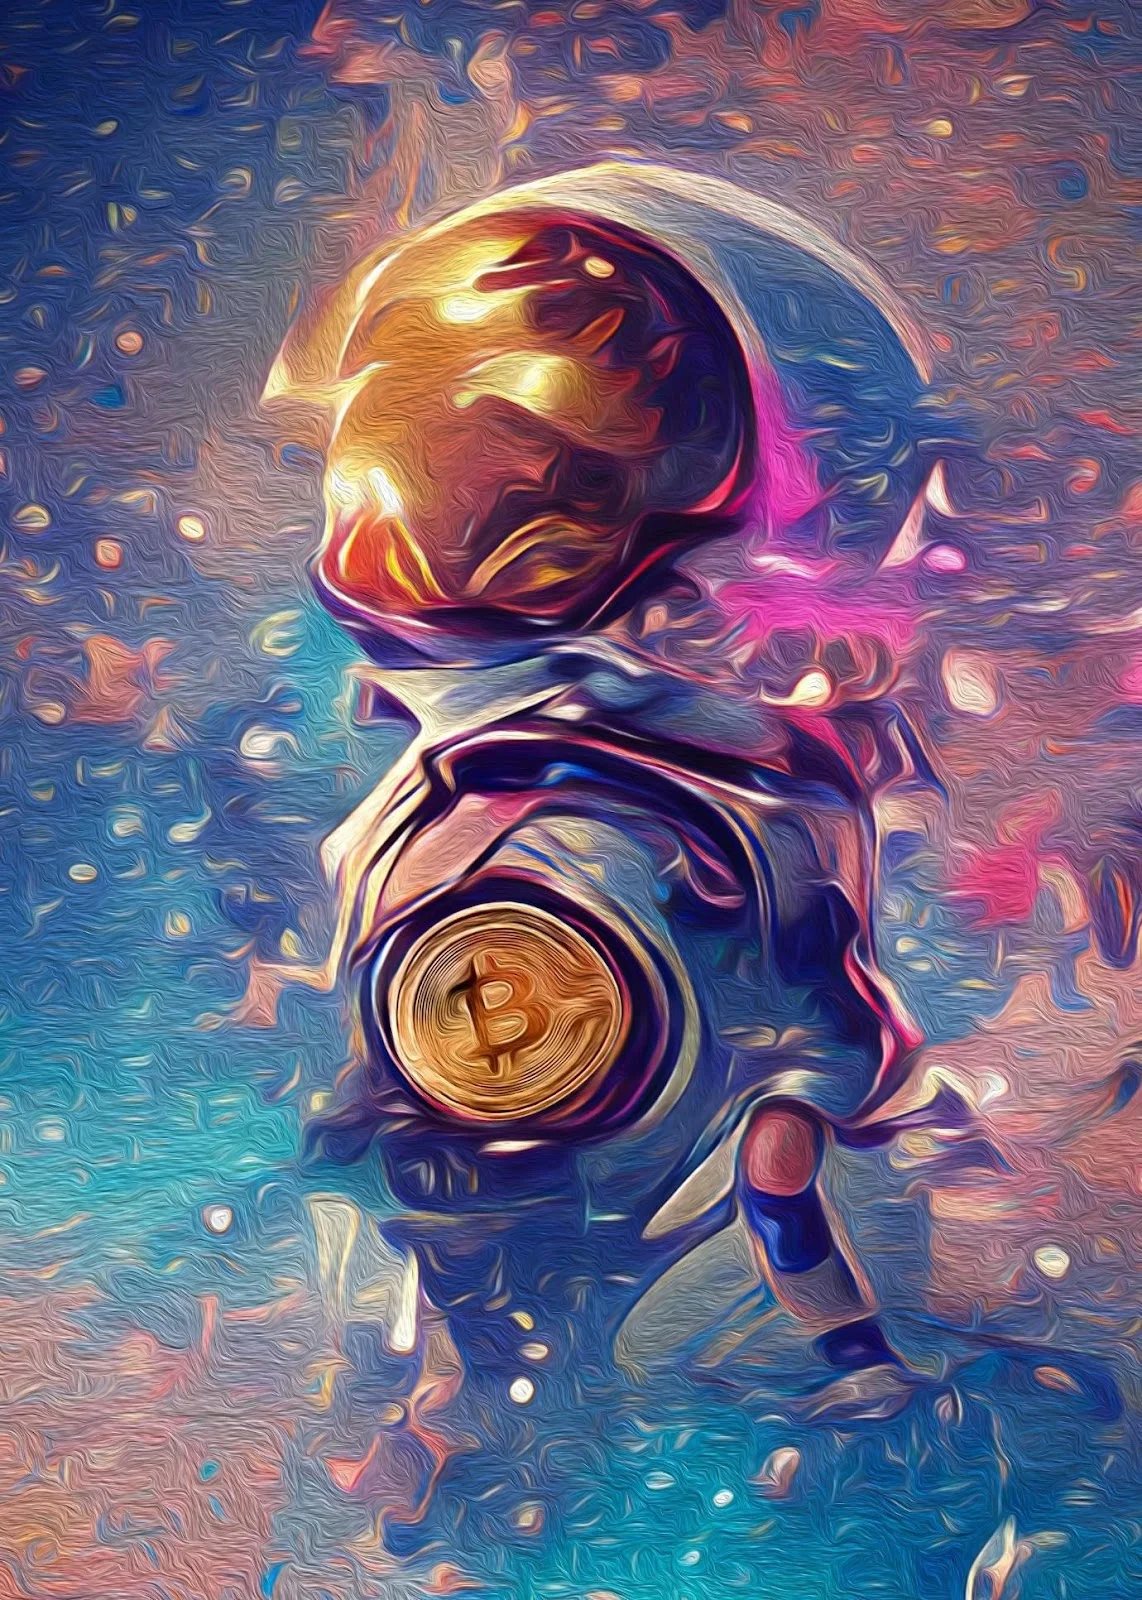 A digital art on Bitcoin and a faint astronaut-like figure.